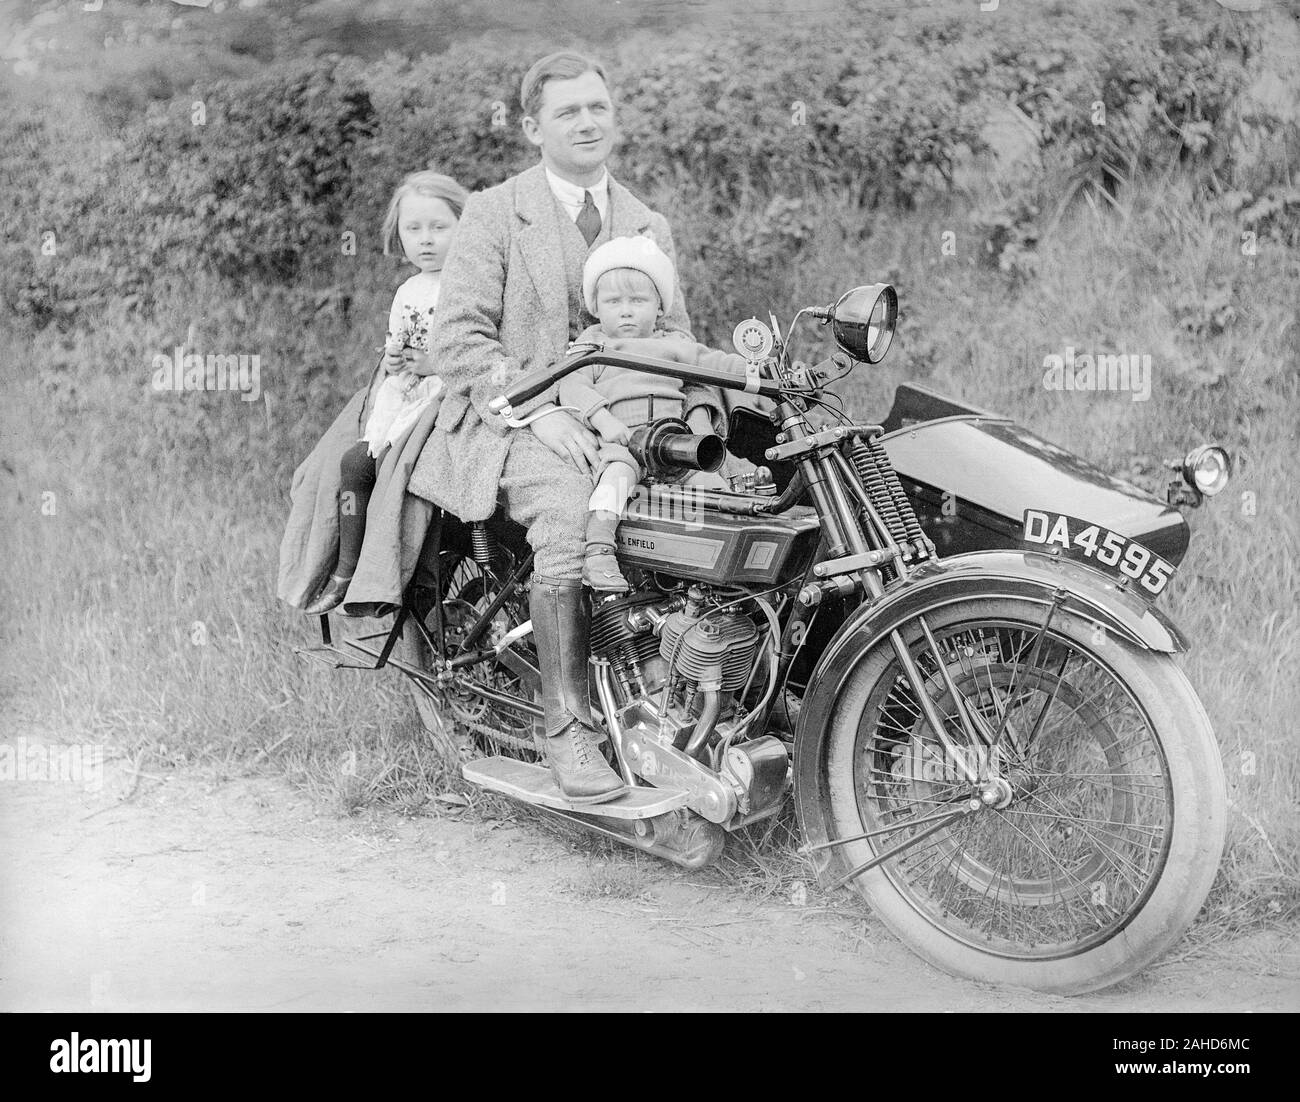 Une photographie vintage noir et blanc édouardienne montrant un homme suissant sur un vélo à moteur Royal Enfield, numéro de licence d'enregistrement, son DA 4595, avec sa jeune baie assise sur le réservoir à essence devant lui, et sa jeune fille assise derrière lui. Pris quelque part en Angleterre. Banque D'Images